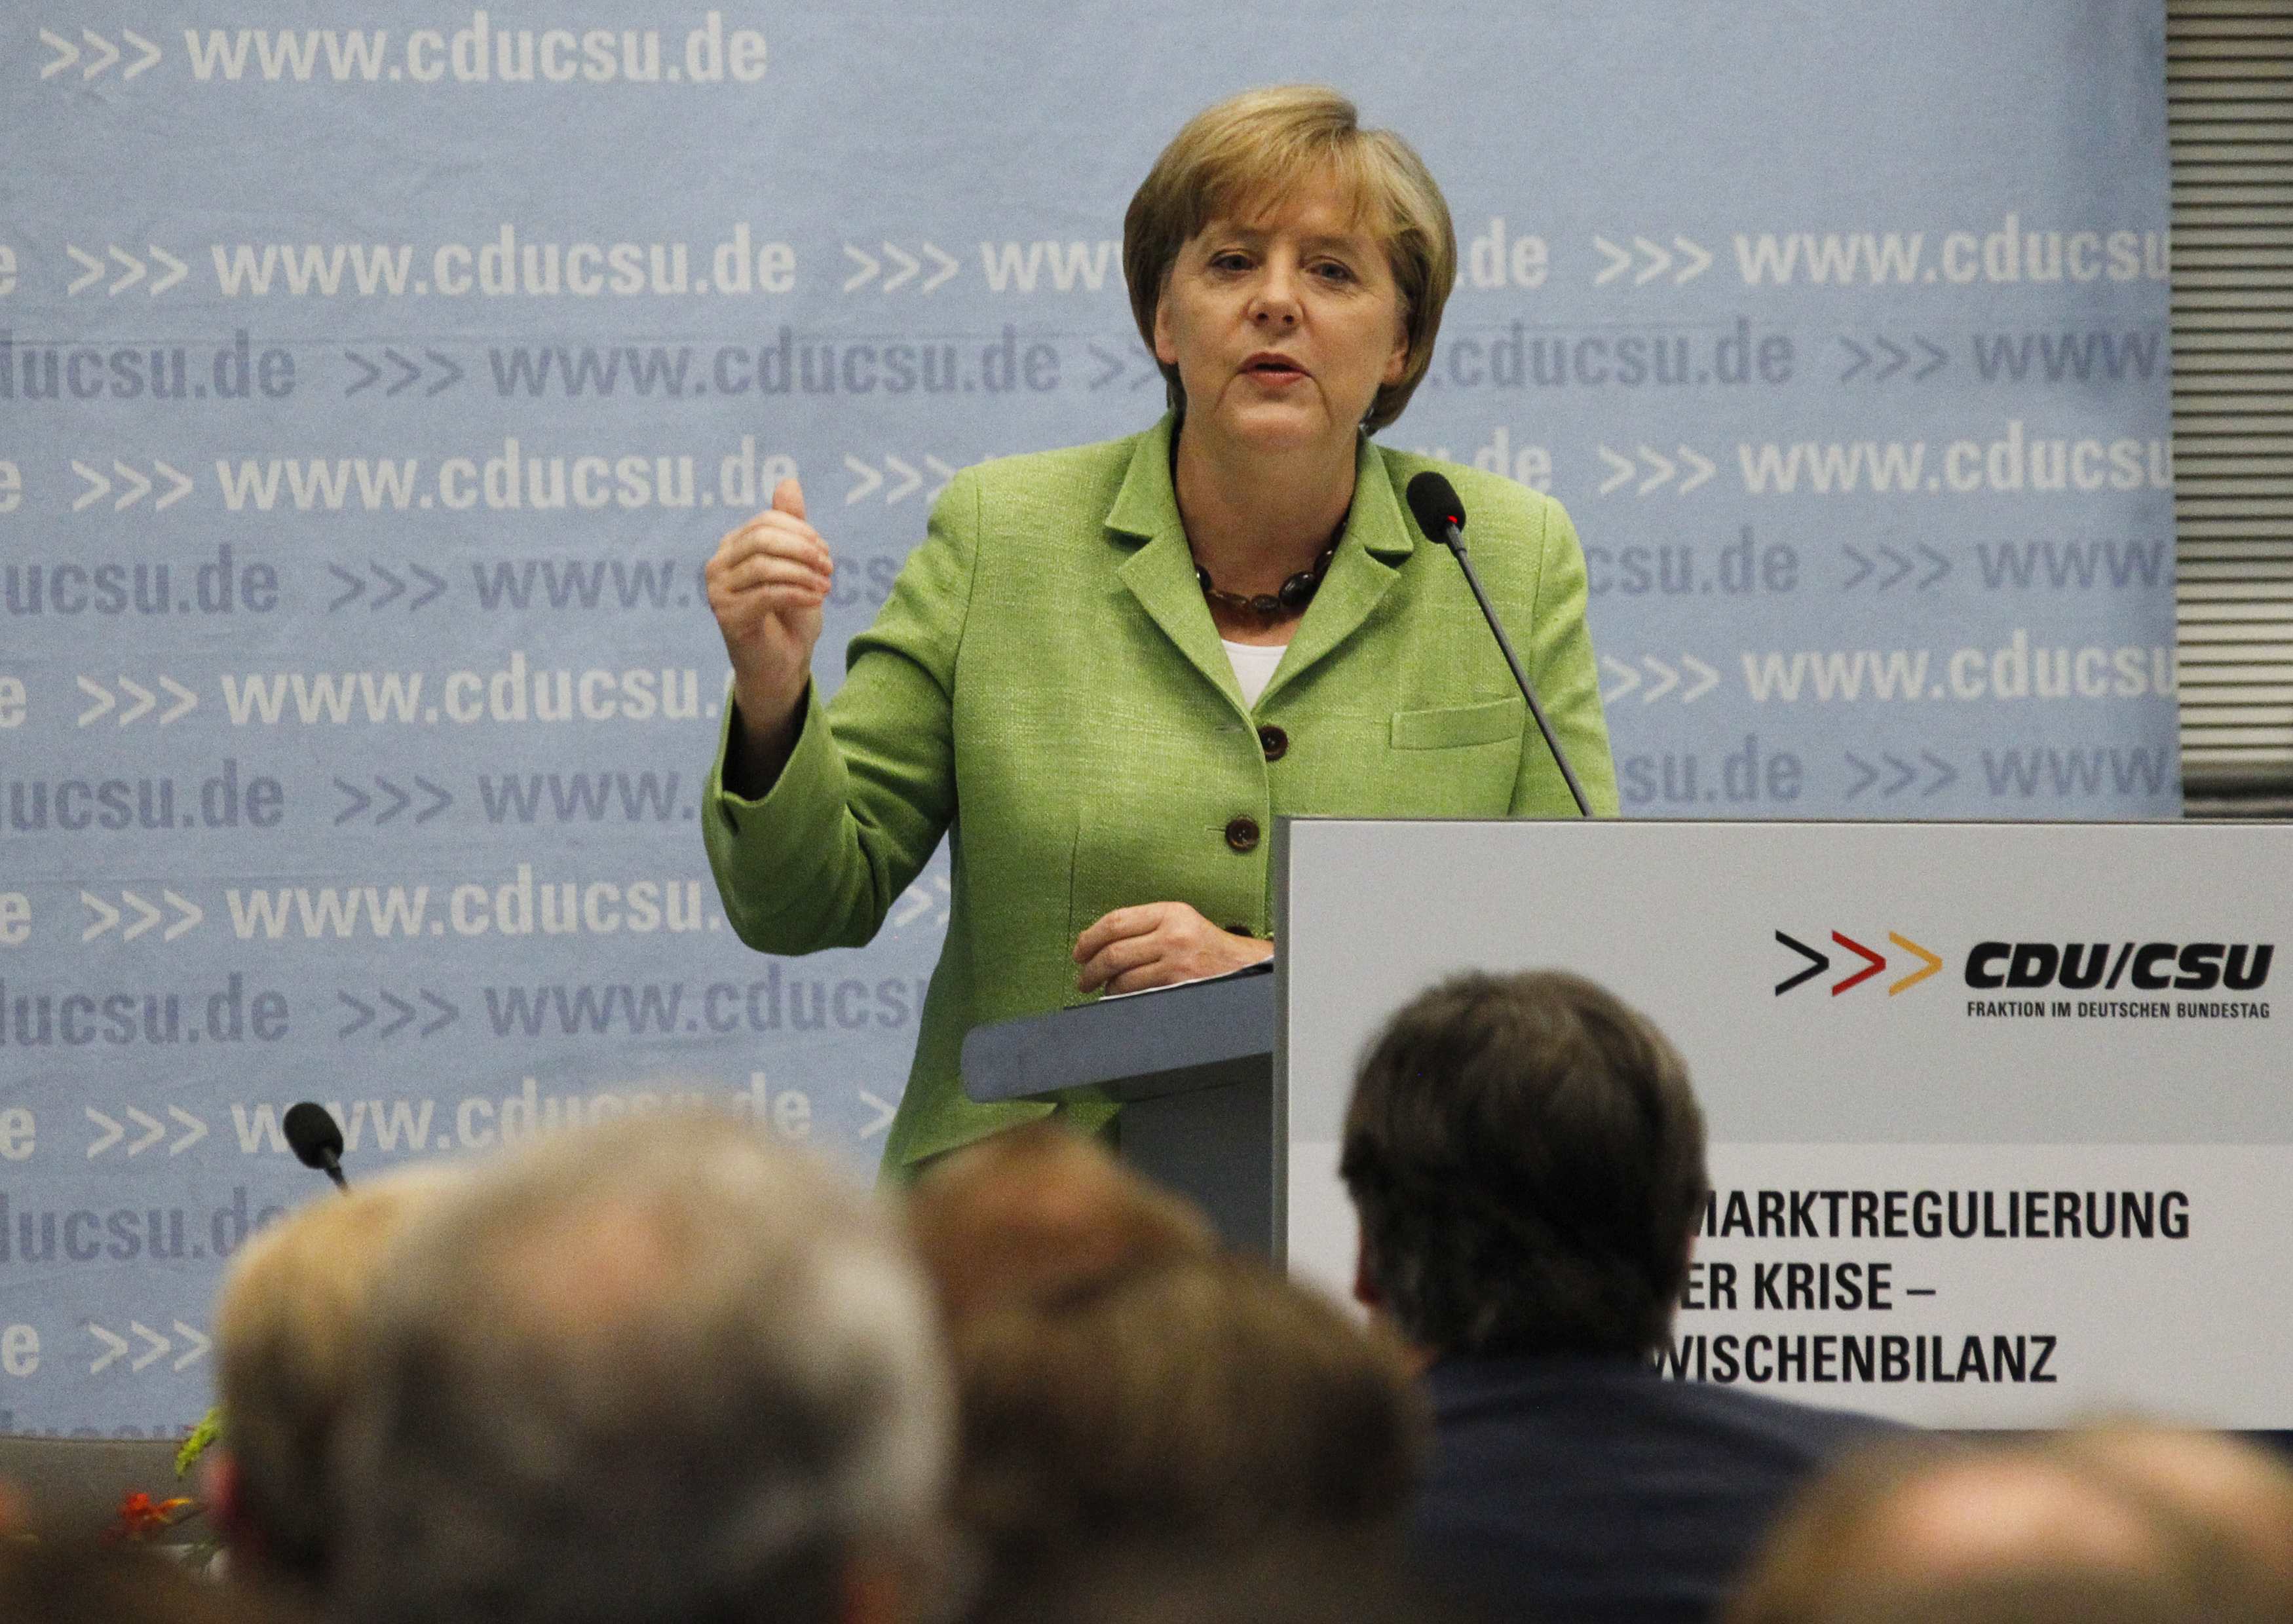 Βουλευτές της γερμανικής κυβέρνησης συνεδριάζουν για την Ελλάδα